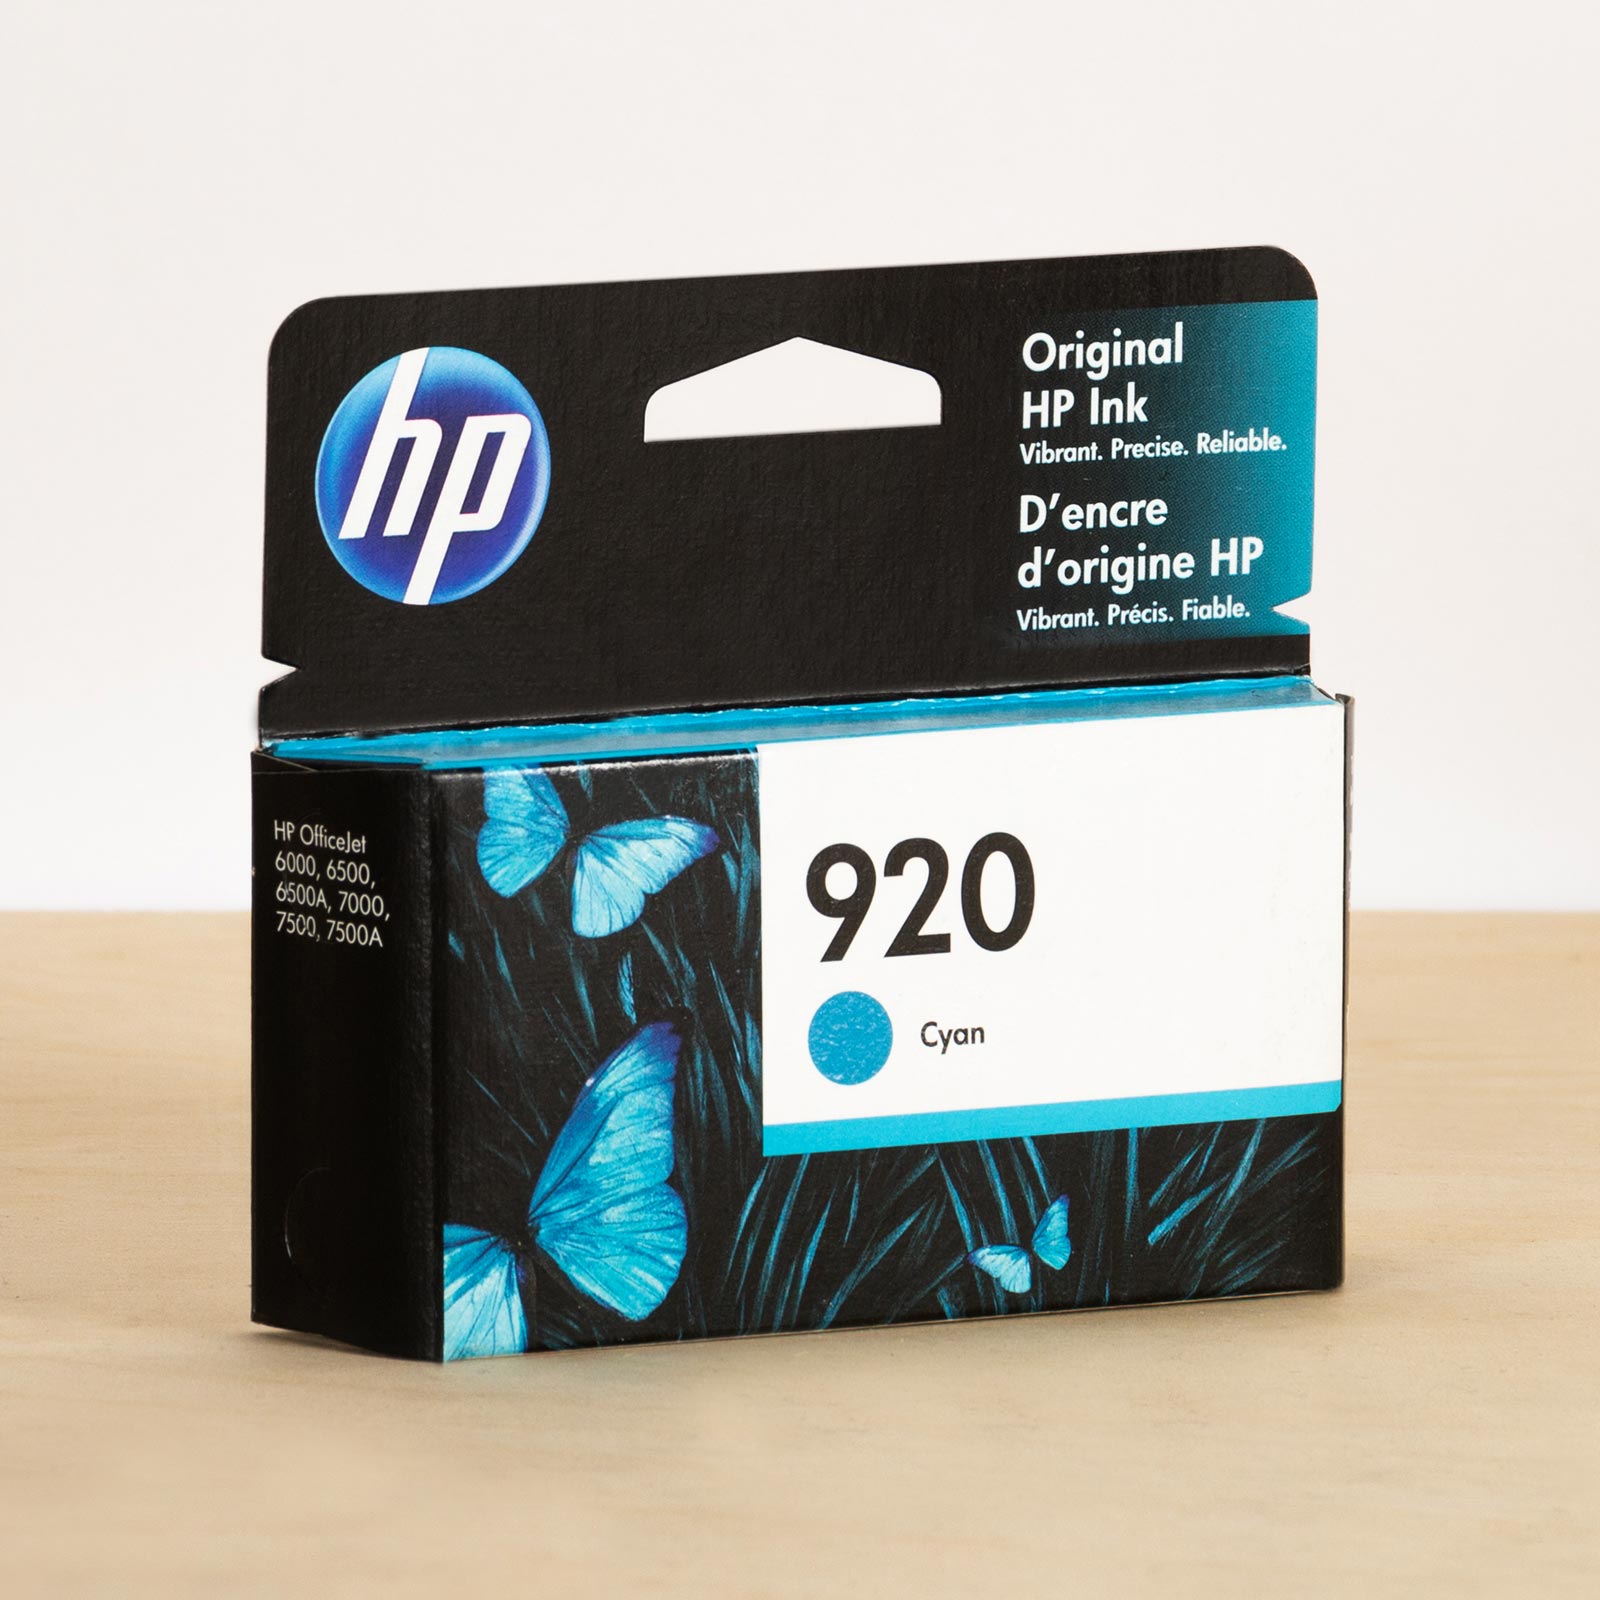 Hp ink-cyan-HP-OfficeJet-6000